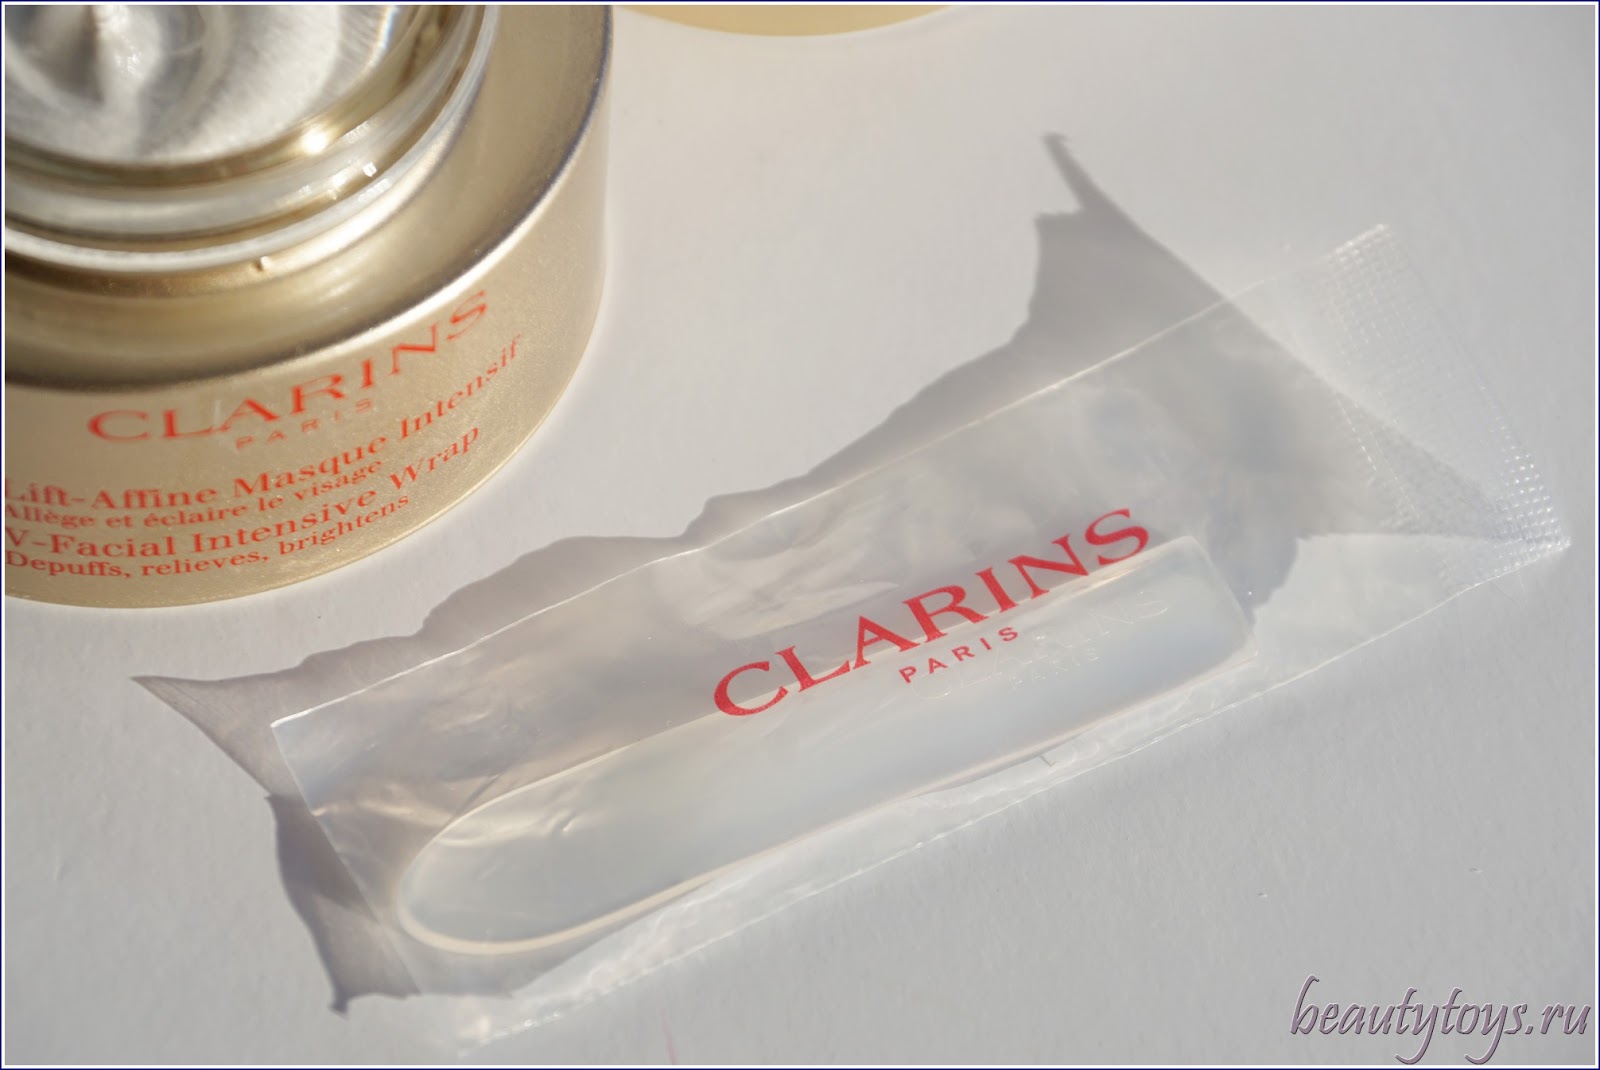 Clarins V-Facial Intensive Wrap Моделирующая маска с дренирующим эффектом.